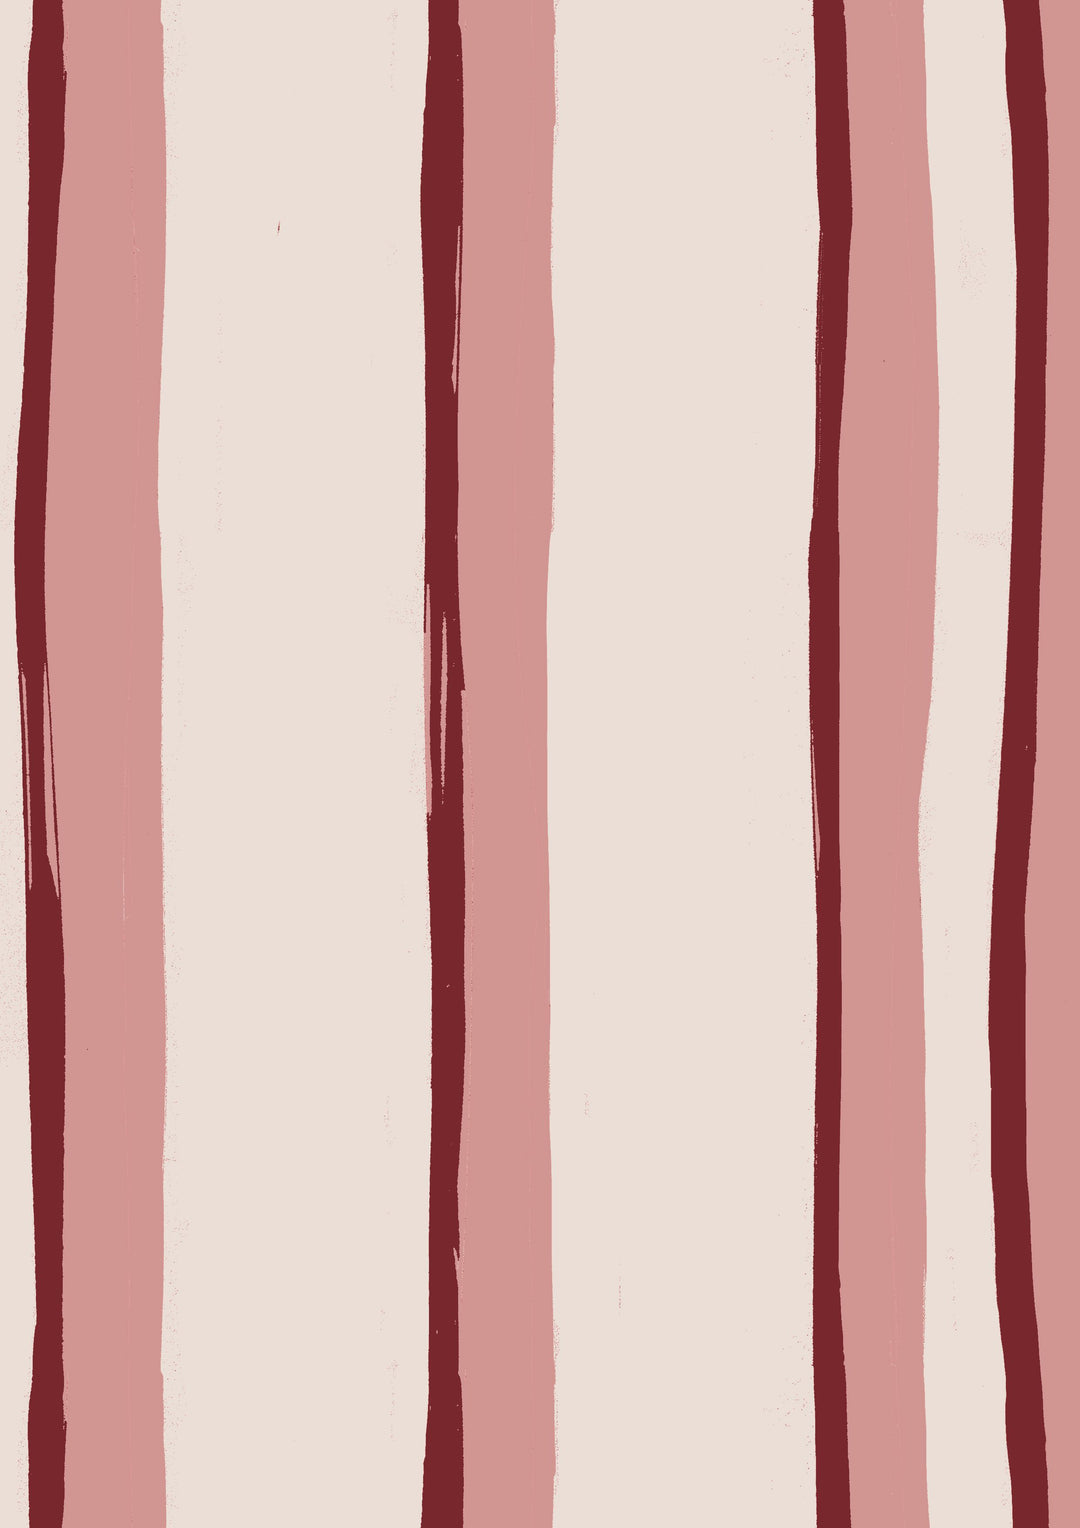 annika-reed-studio-somerset-stripes-wallpaper-in-pink-red-cream-british-designer